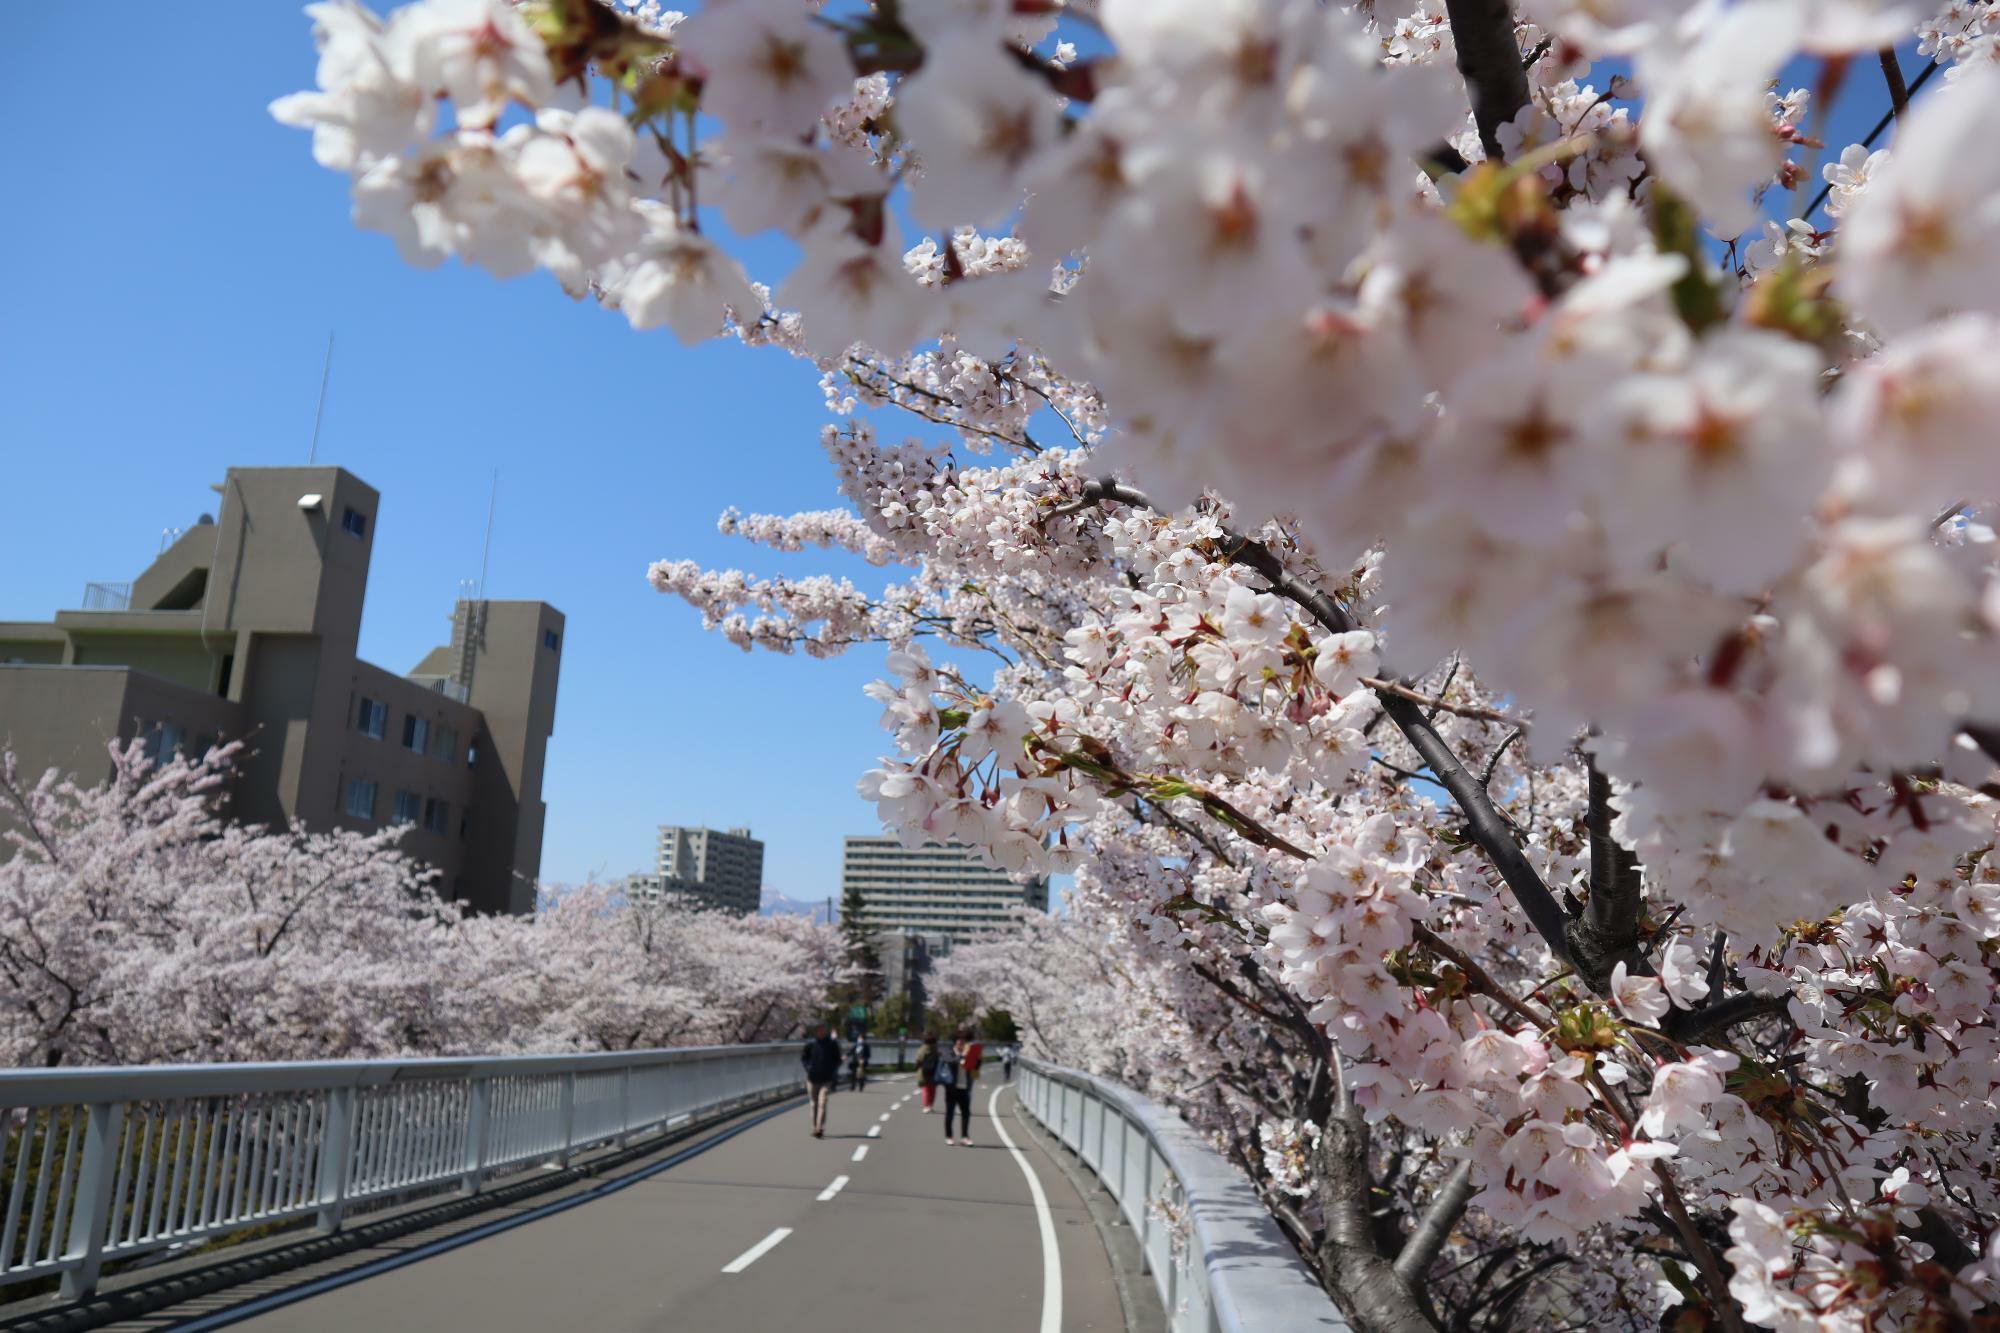 橋の中央から桜のトンネル方向を向き撮影。